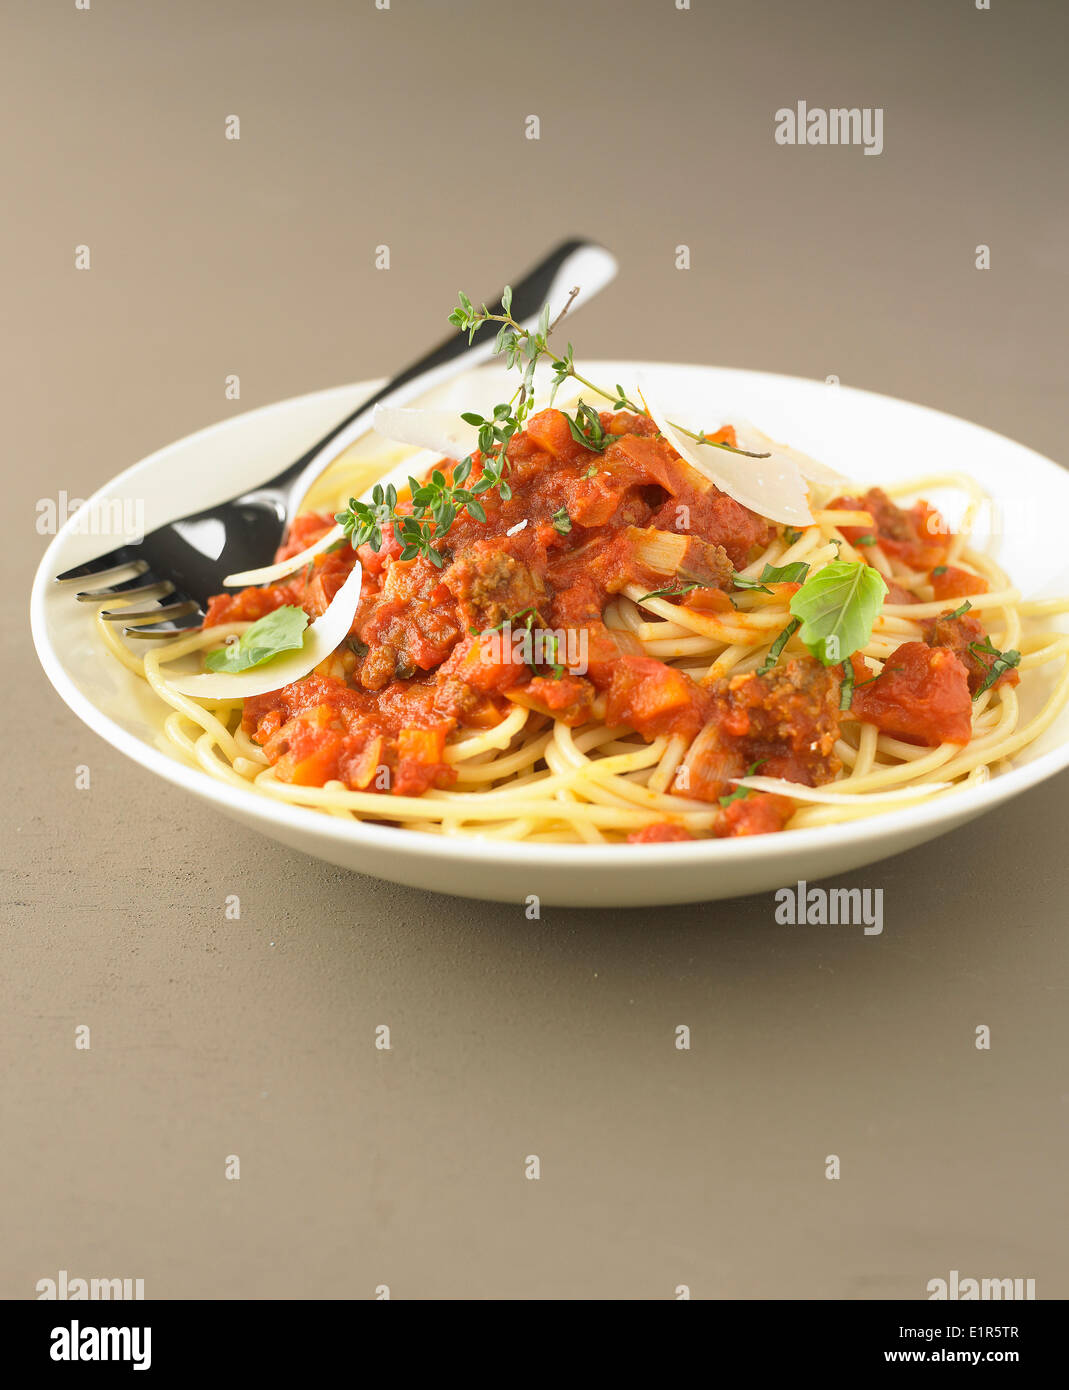 Spaghetti à la bolognese Foto Stock